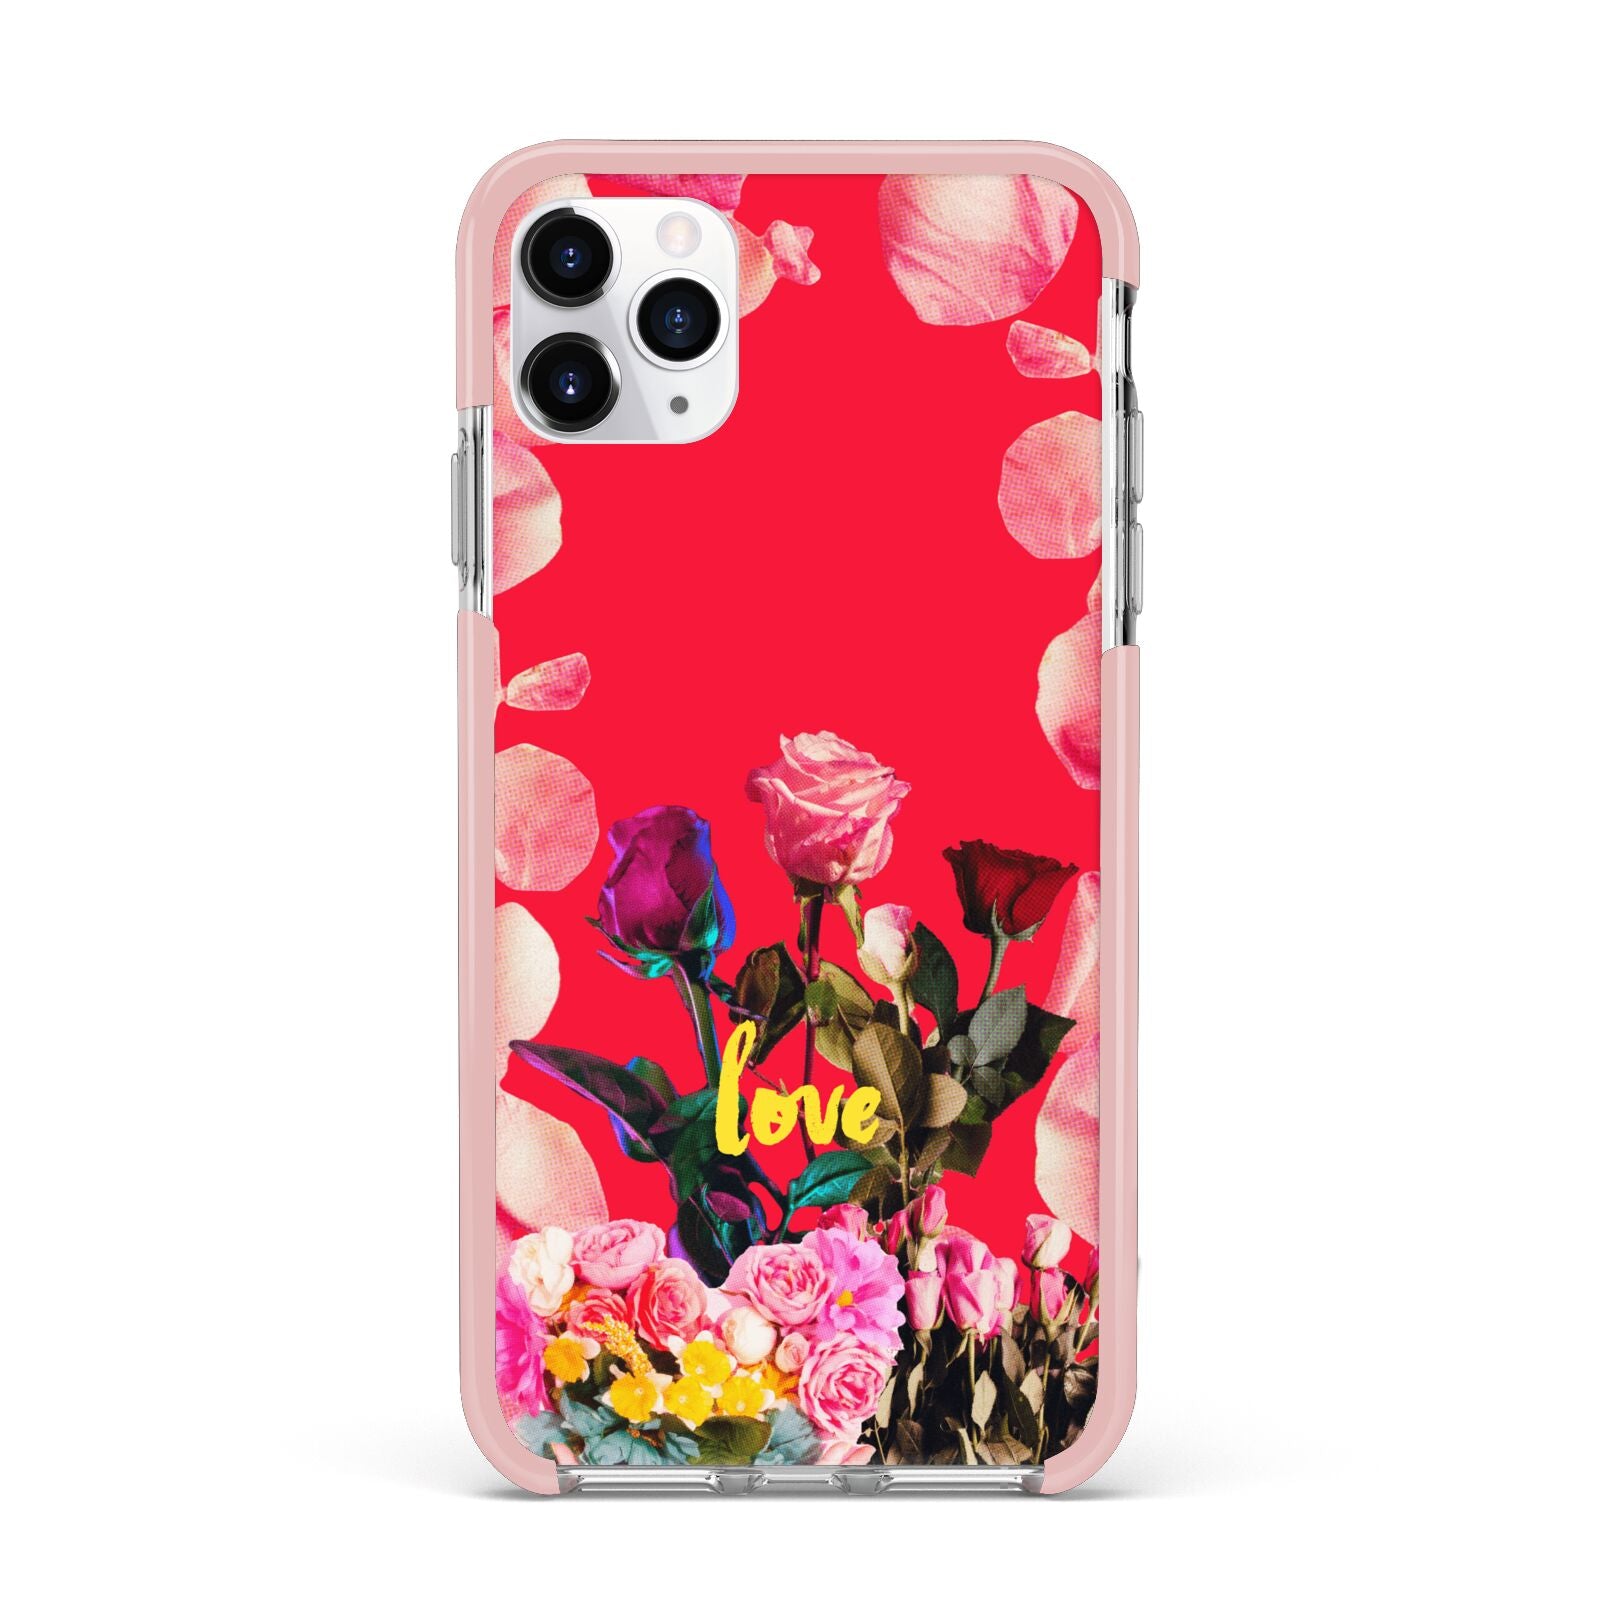 Retro Floral Valentine iPhone 11 Pro Max Impact Pink Edge Case